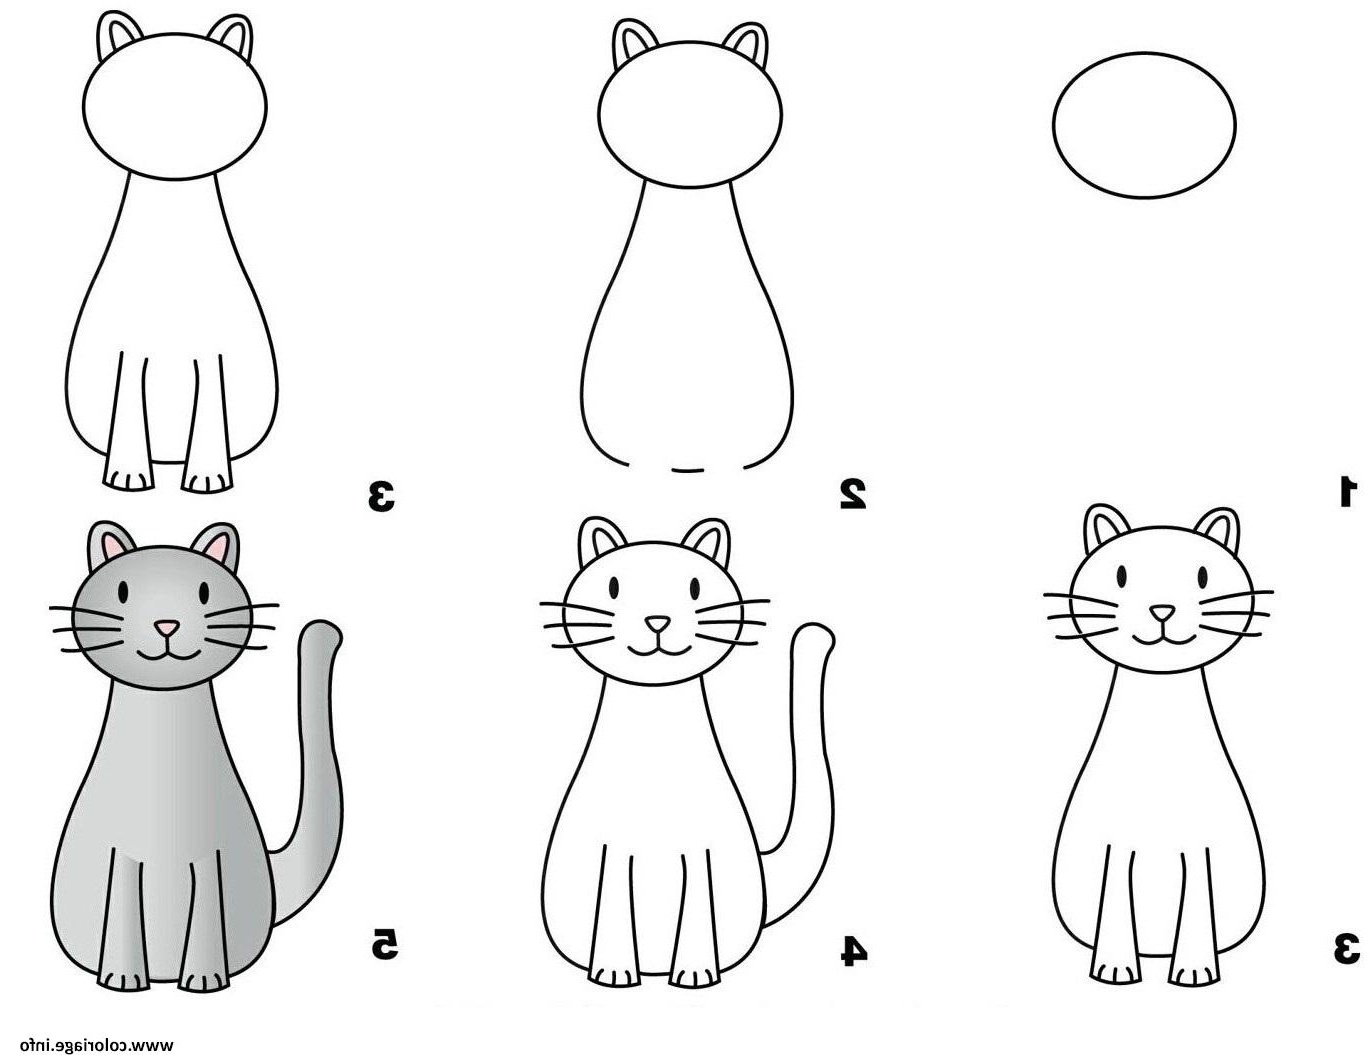 Рисование для начинающих схемы. Пошаговое рисование для детей. Последовательное рисование для детей. Схемы рисования для дошкольников. Схема рисования кошки для детей.